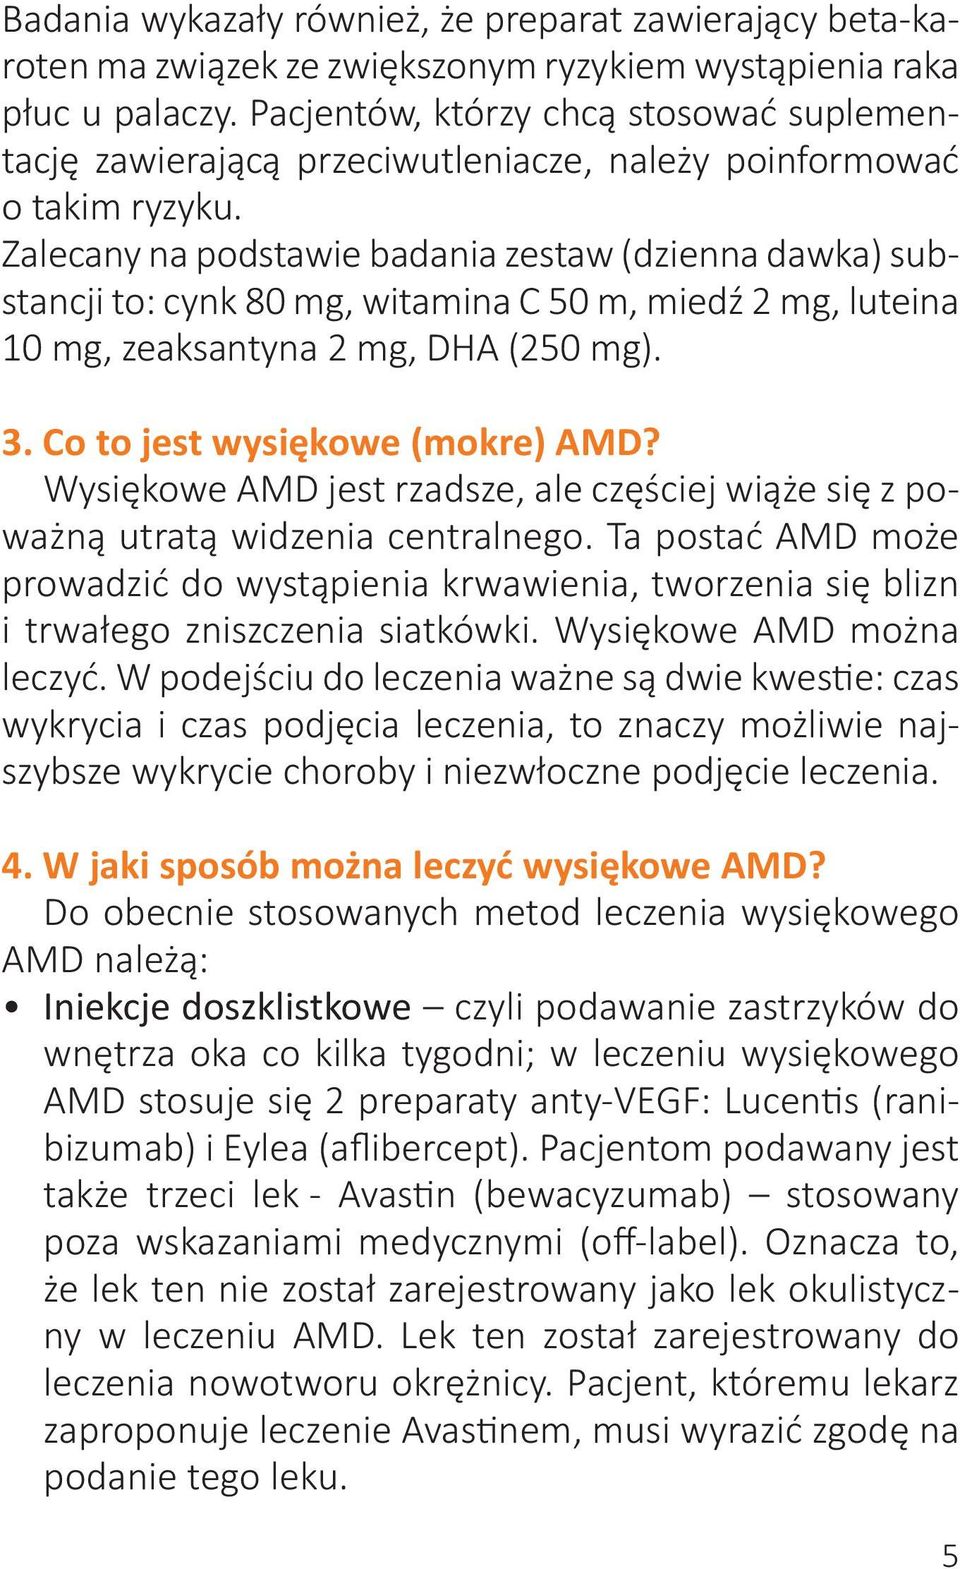 Zalecany na podstawie badania zestaw (dzienna dawka) substancji to: cynk 80 mg, witamina C 50 m, miedź 2 mg, luteina 10 mg, zeaksantyna 2 mg, DHA (250 mg). 3. Co to jest wysiękowe (mokre) AMD?